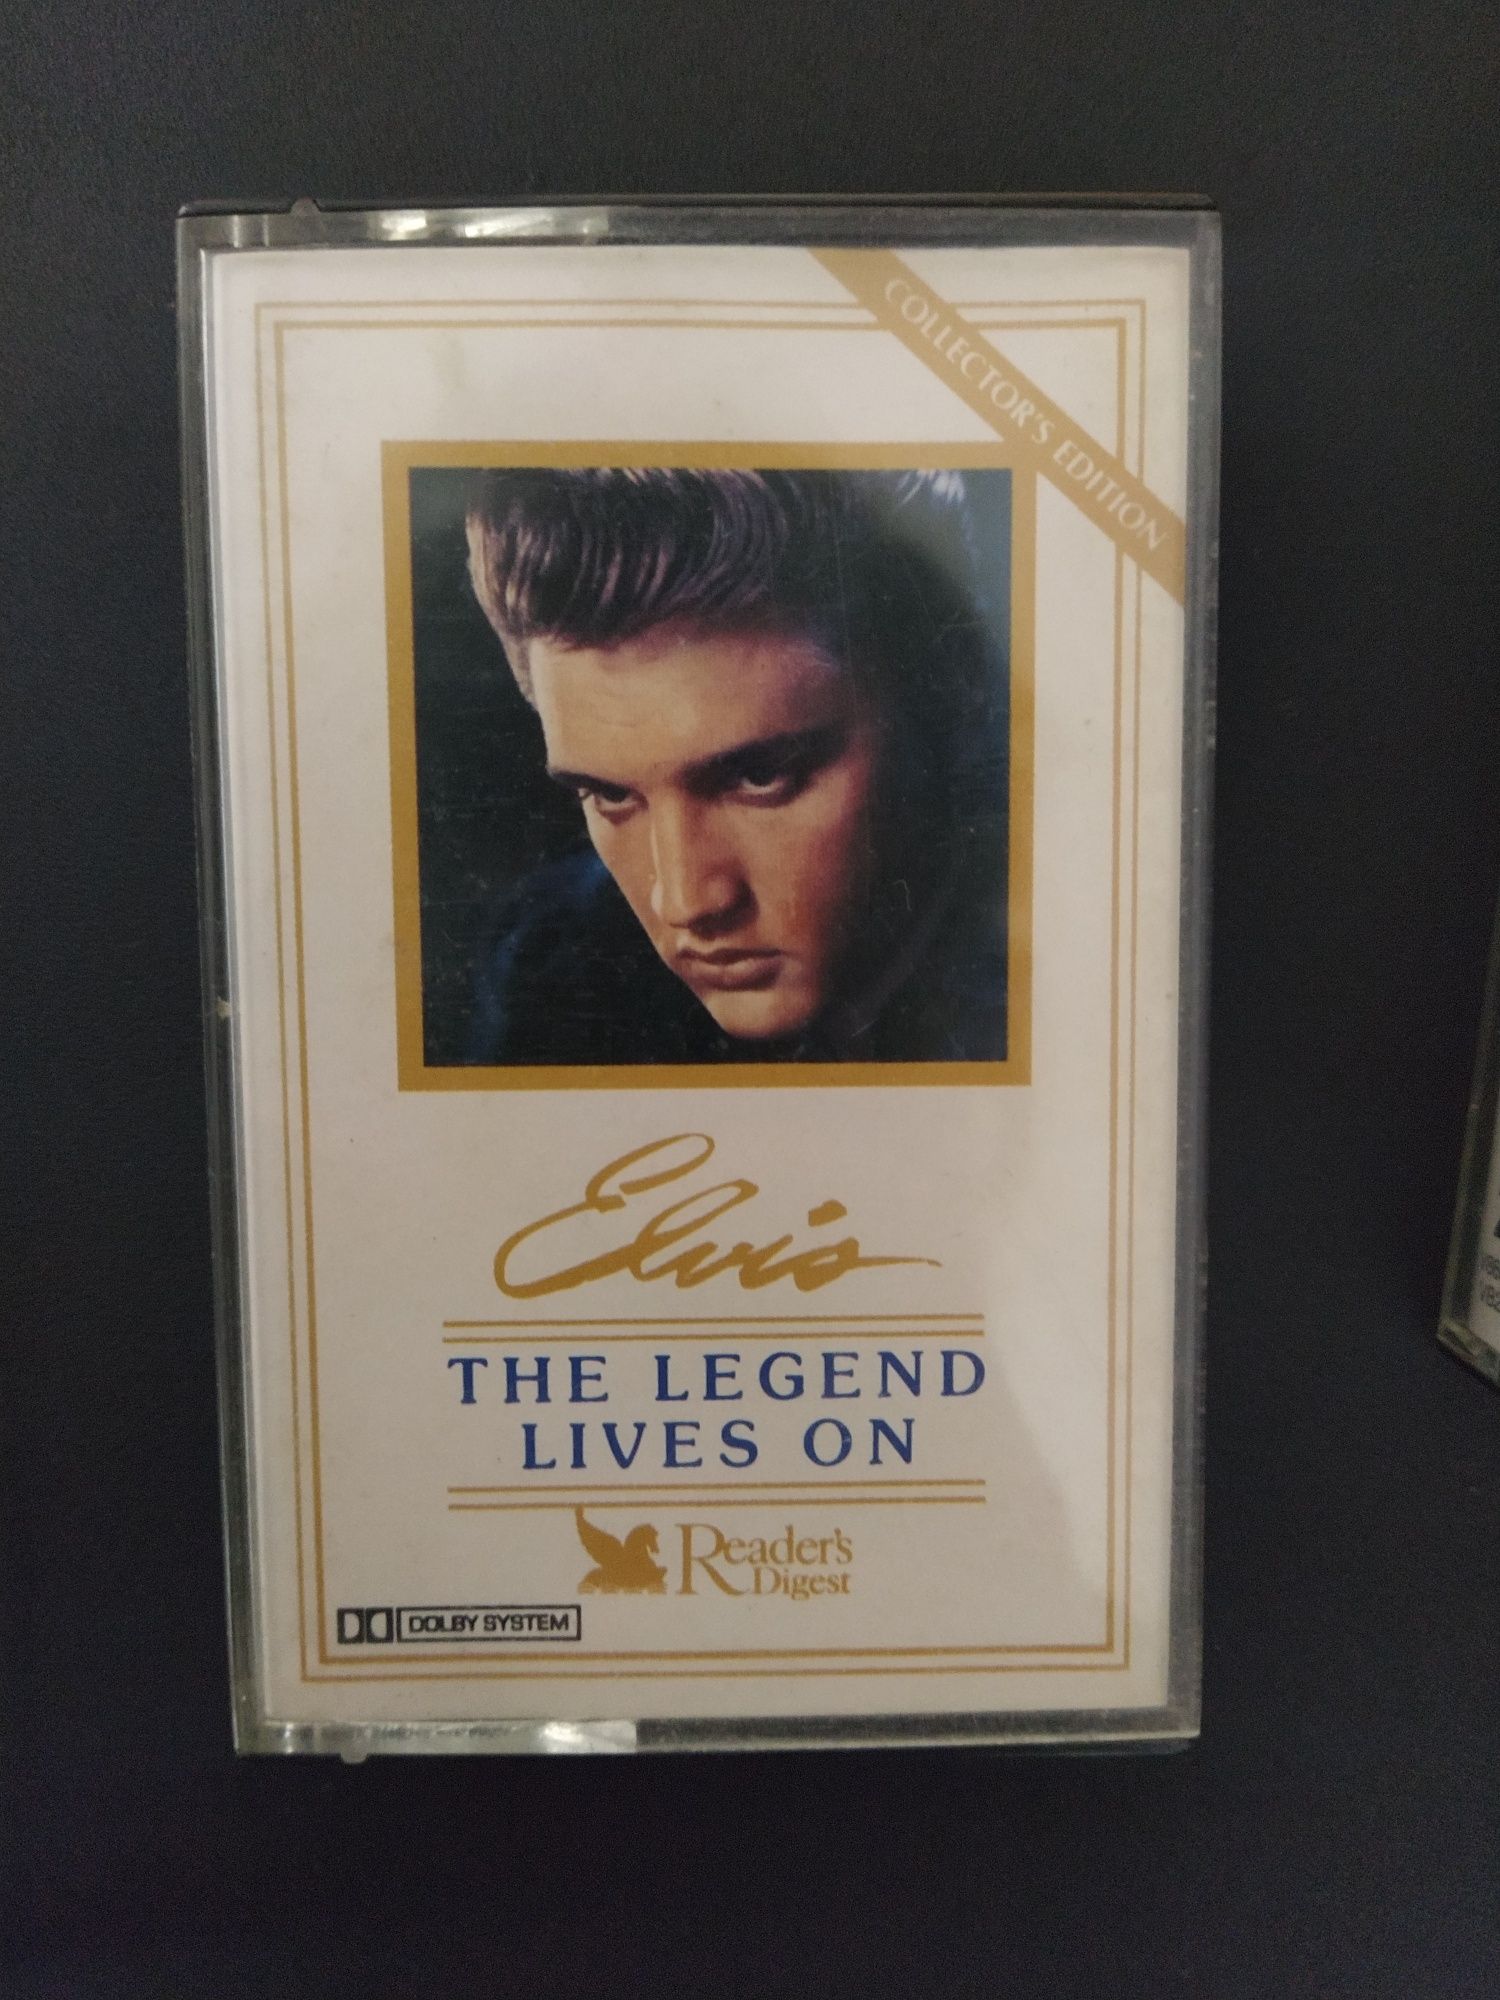 Compilação de 4 Cassetes e 1 Livro de Elvis - "The Legend Lives On"